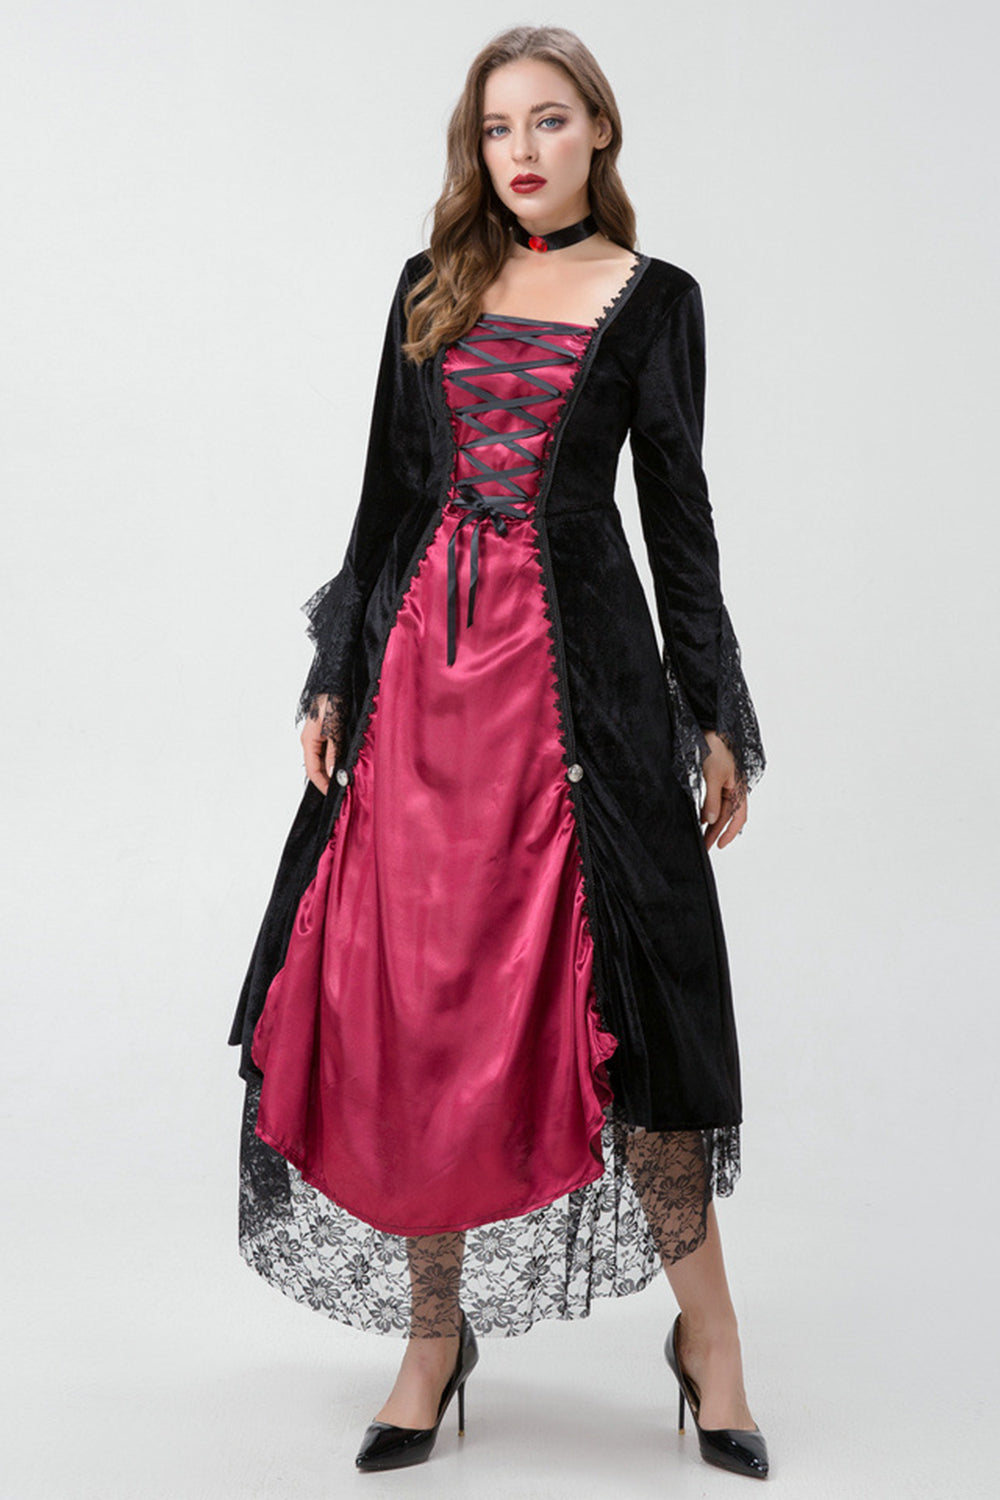 Vestido gótico de Halloween da Borgonha com renda cruzada de Criss